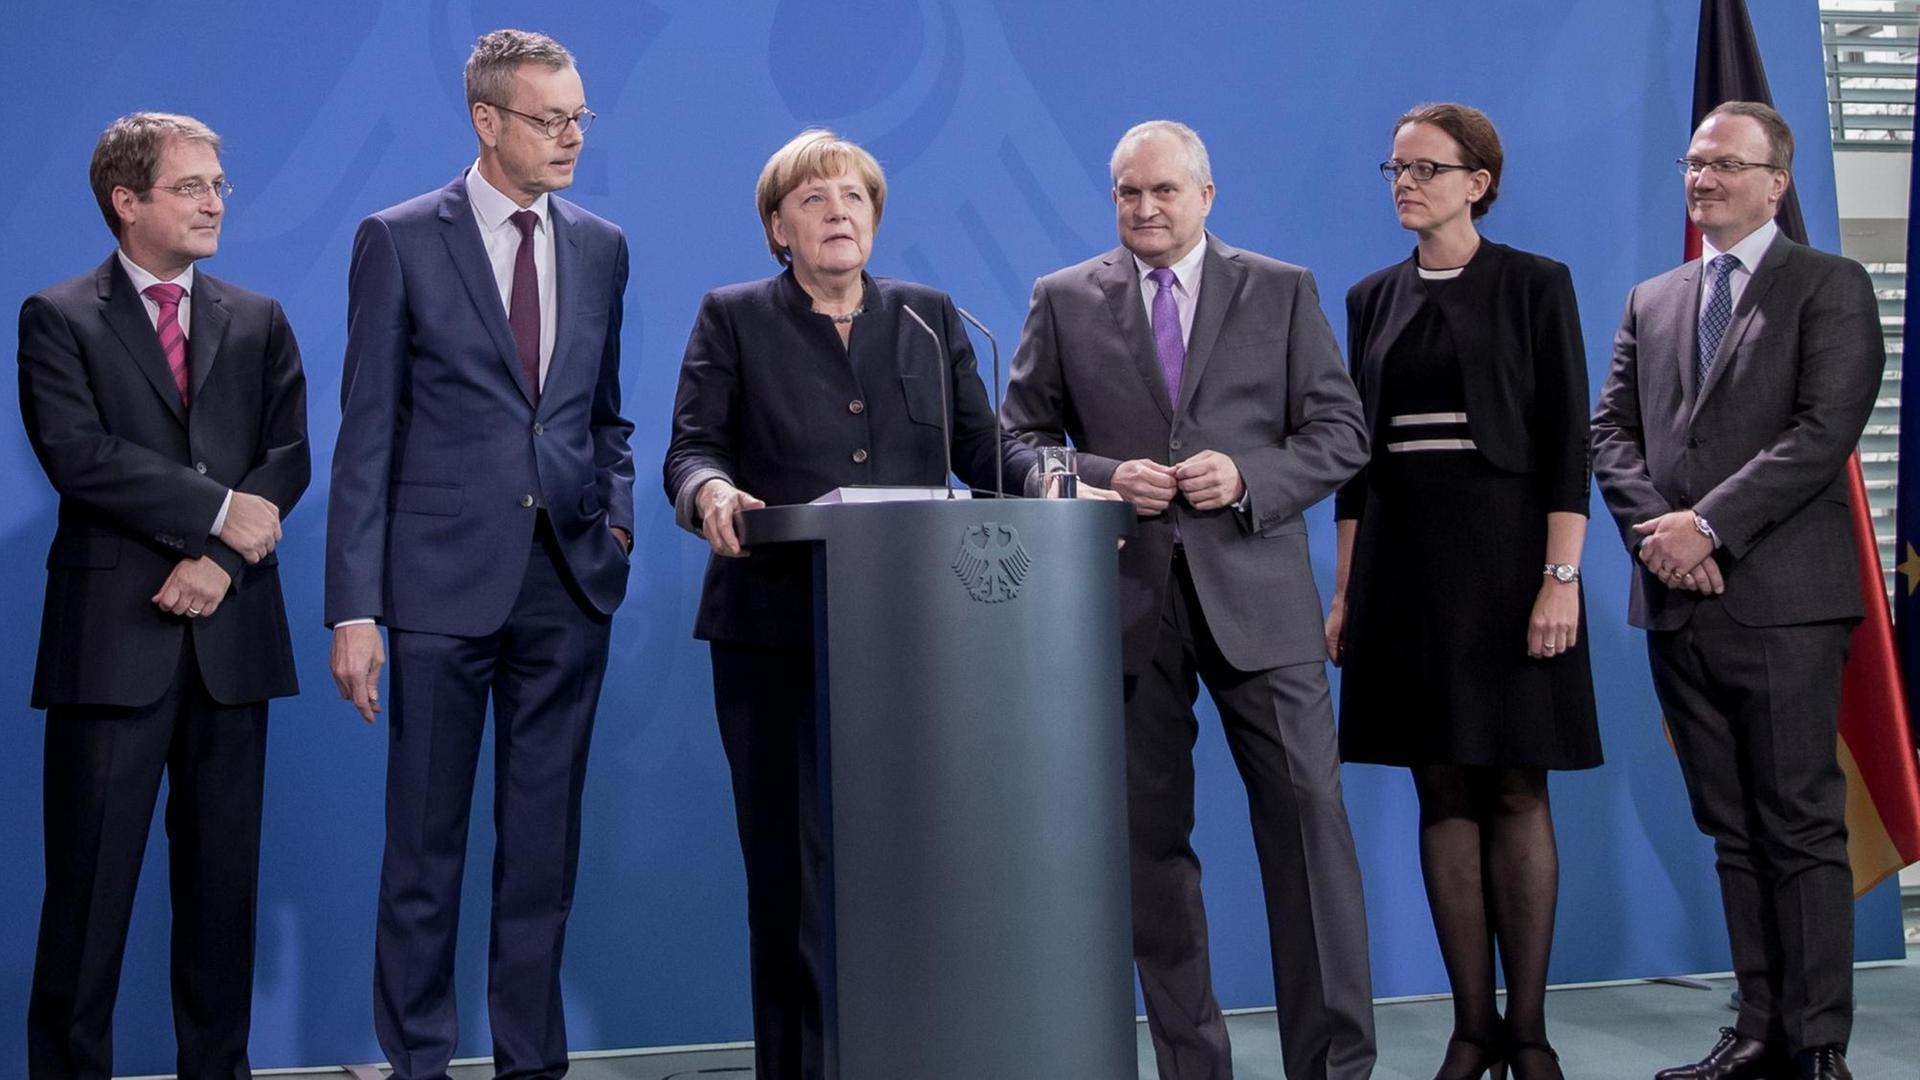 Bundeskanzlerin Angela Merkel (CDU) steht am 02.11.2016 in Berlin bei der Entgegennahme des Gutachtens zur Wirtschaftsentwicklung zwischen dem Vorsitzenden des Sachverständigenrates, Christoph M. Schmidt (3.v.r), Peter Bofinger (2.v.l), Lars P. Feld (r), Isabel Schnabel (2.v.r) und Volker Wieland...